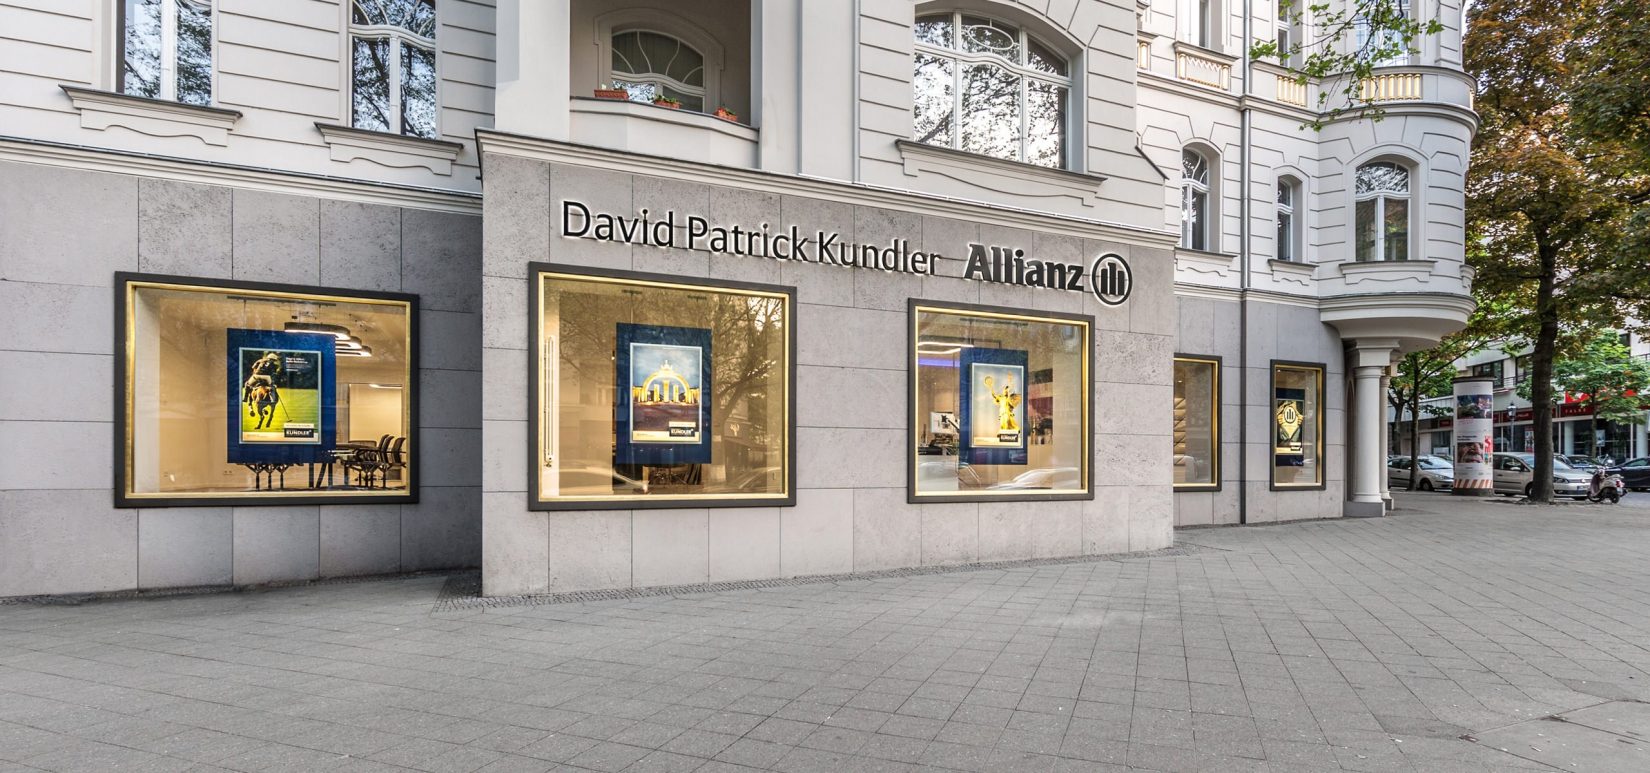 Außenansicht der Büroräume der Allianz Kundler Generalvertretung in Berlin – Vertrauen Sie auf die globale Reichweite und 
Solidität der Allianz Versicherung.